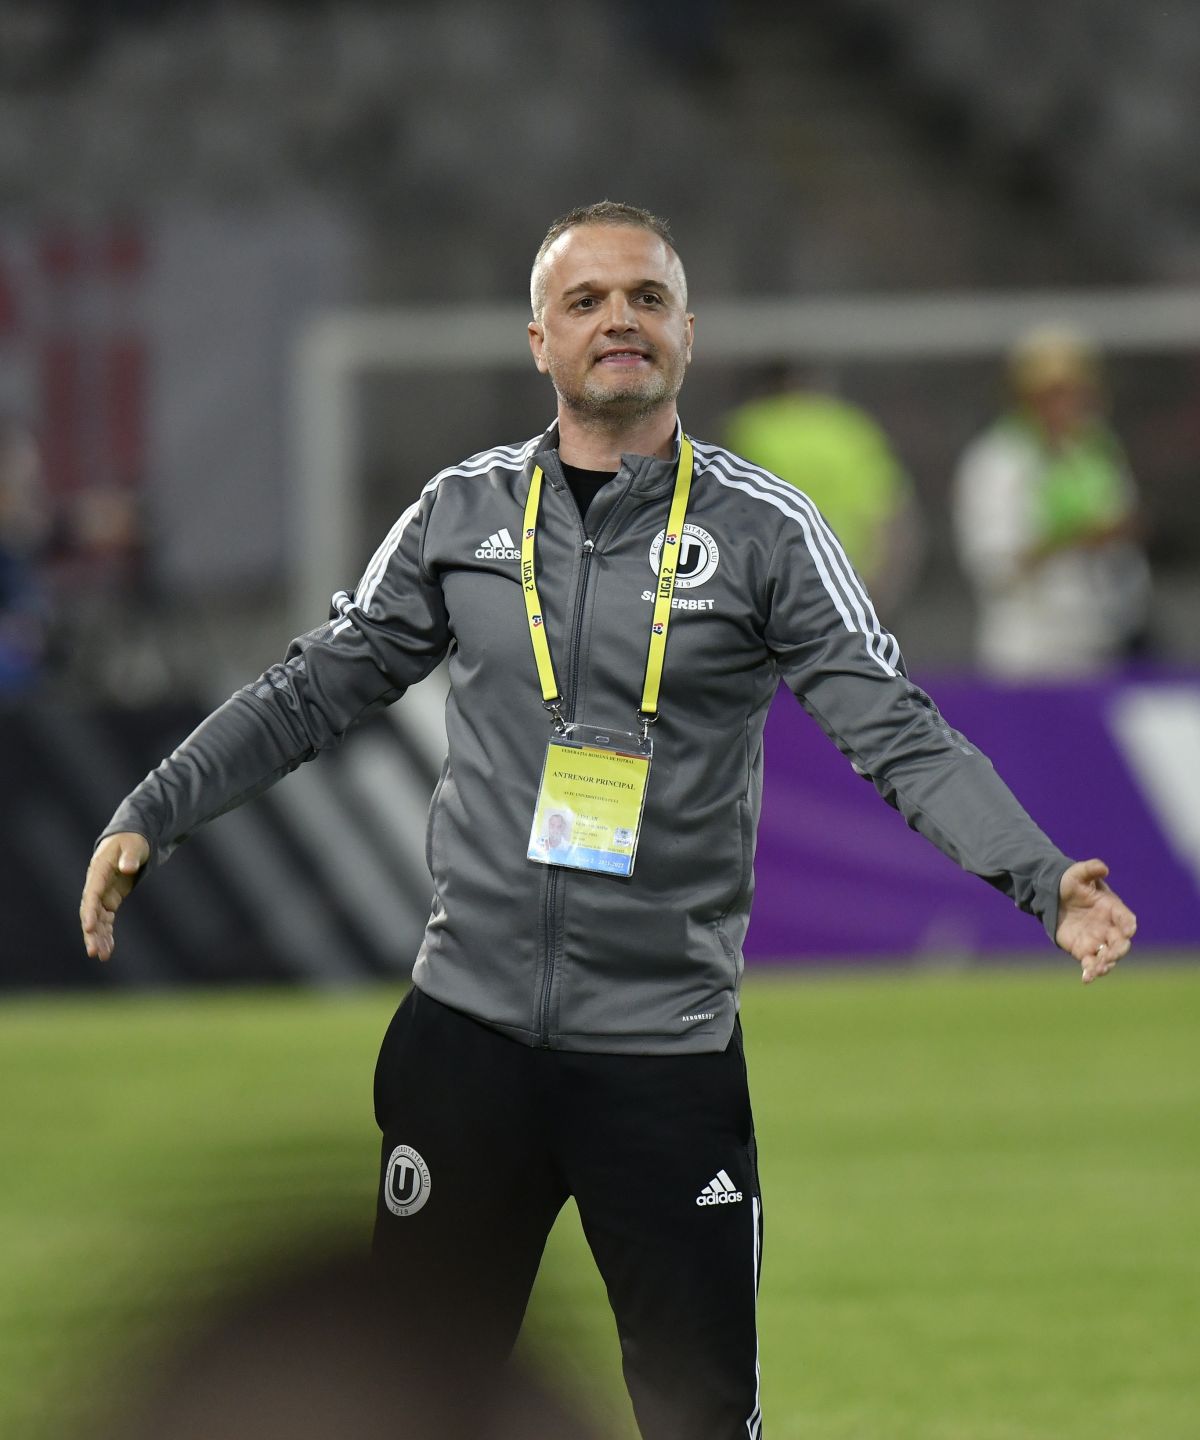 Eroul lui U Cluj dezvăluie cum vor aborda clujenii returul cu Dinamo: „Este mai bine să nu credem asta” » De ce s-a întors soția lui în Ucraina